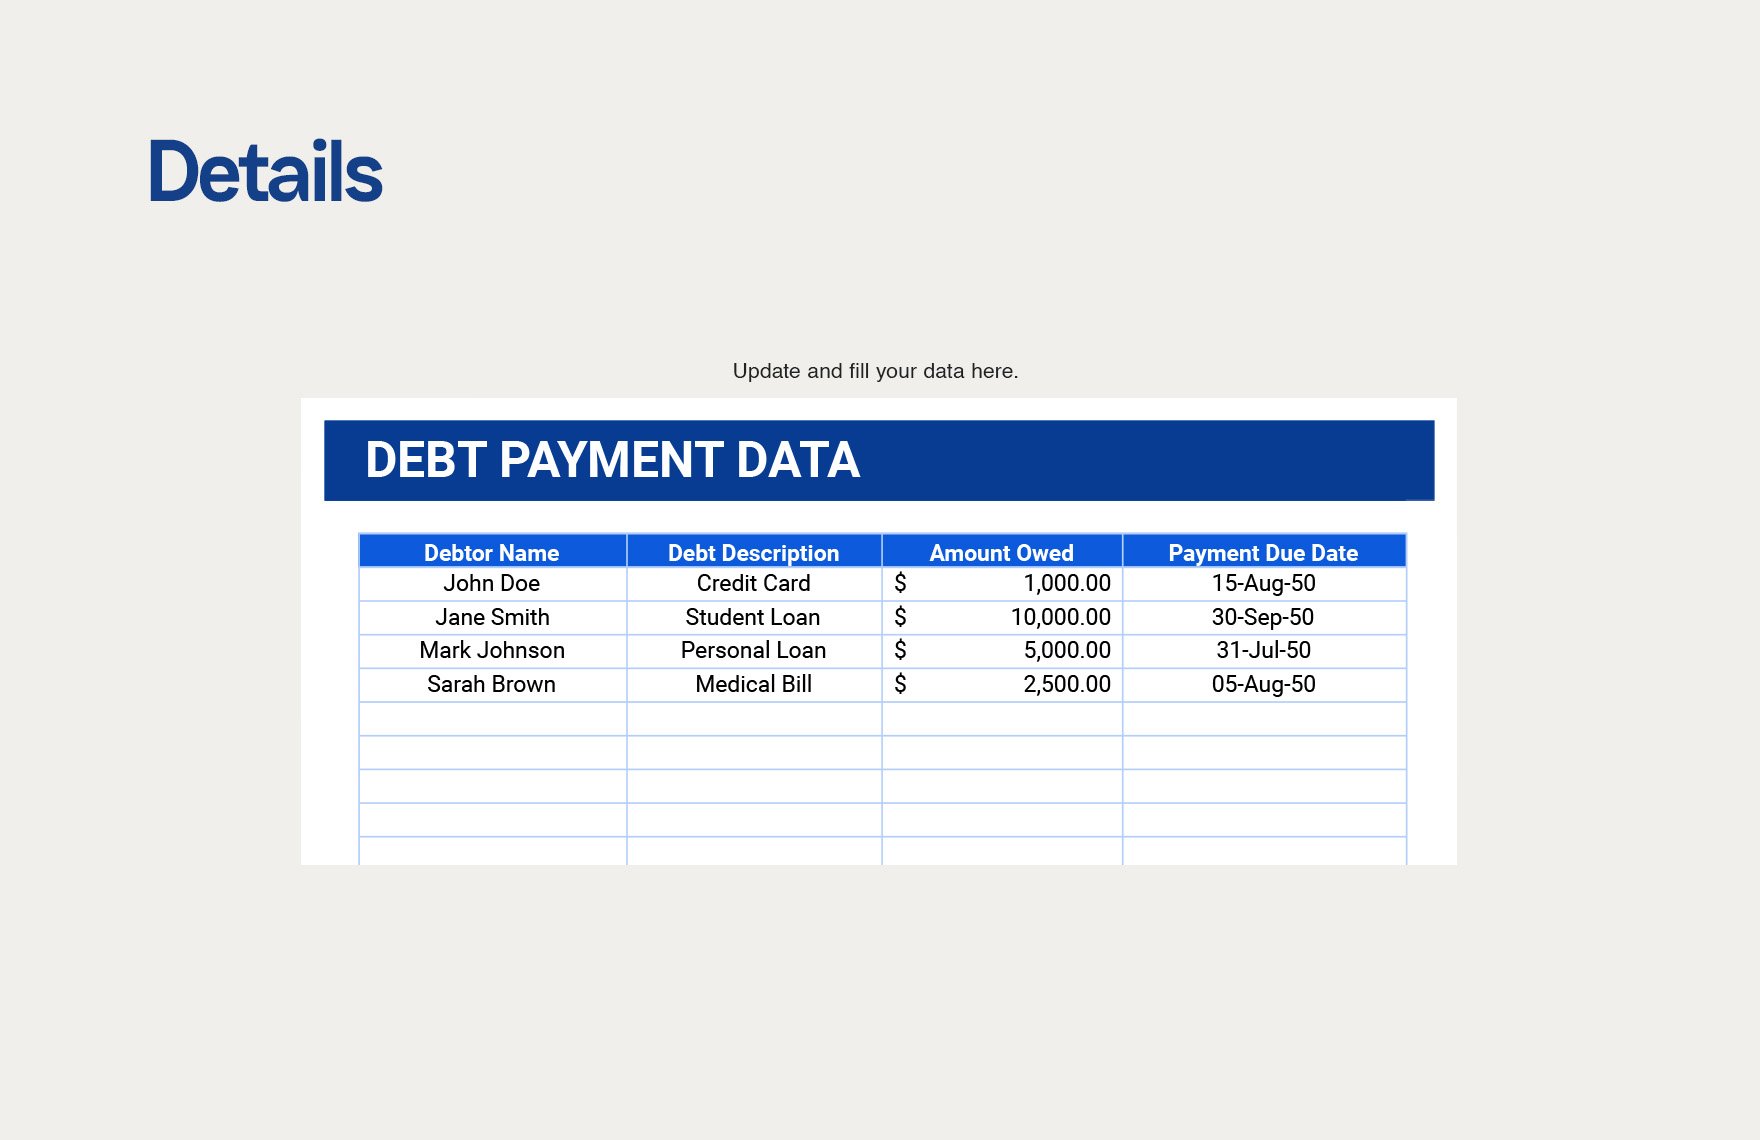 Debt Payment Tracker Template